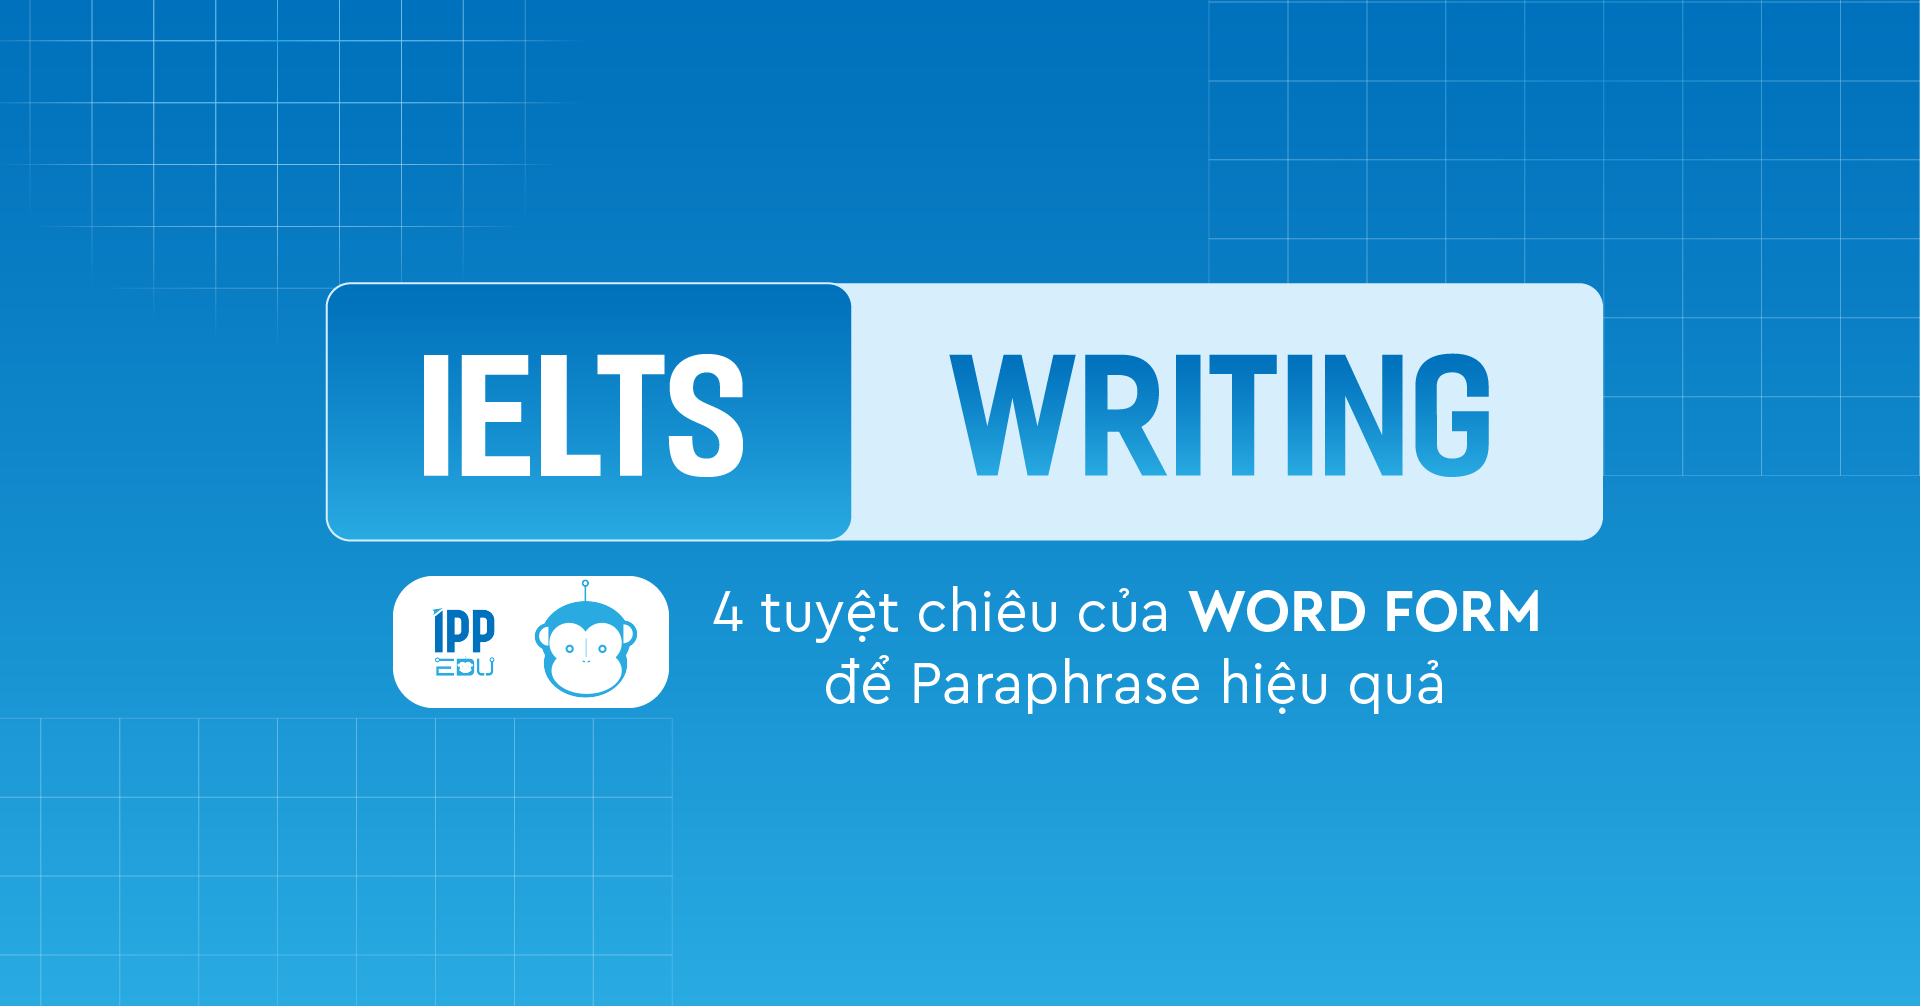 4 tuyệt chiêu của Word Form để Paraphrase hiệu quả trong IELTS Writing